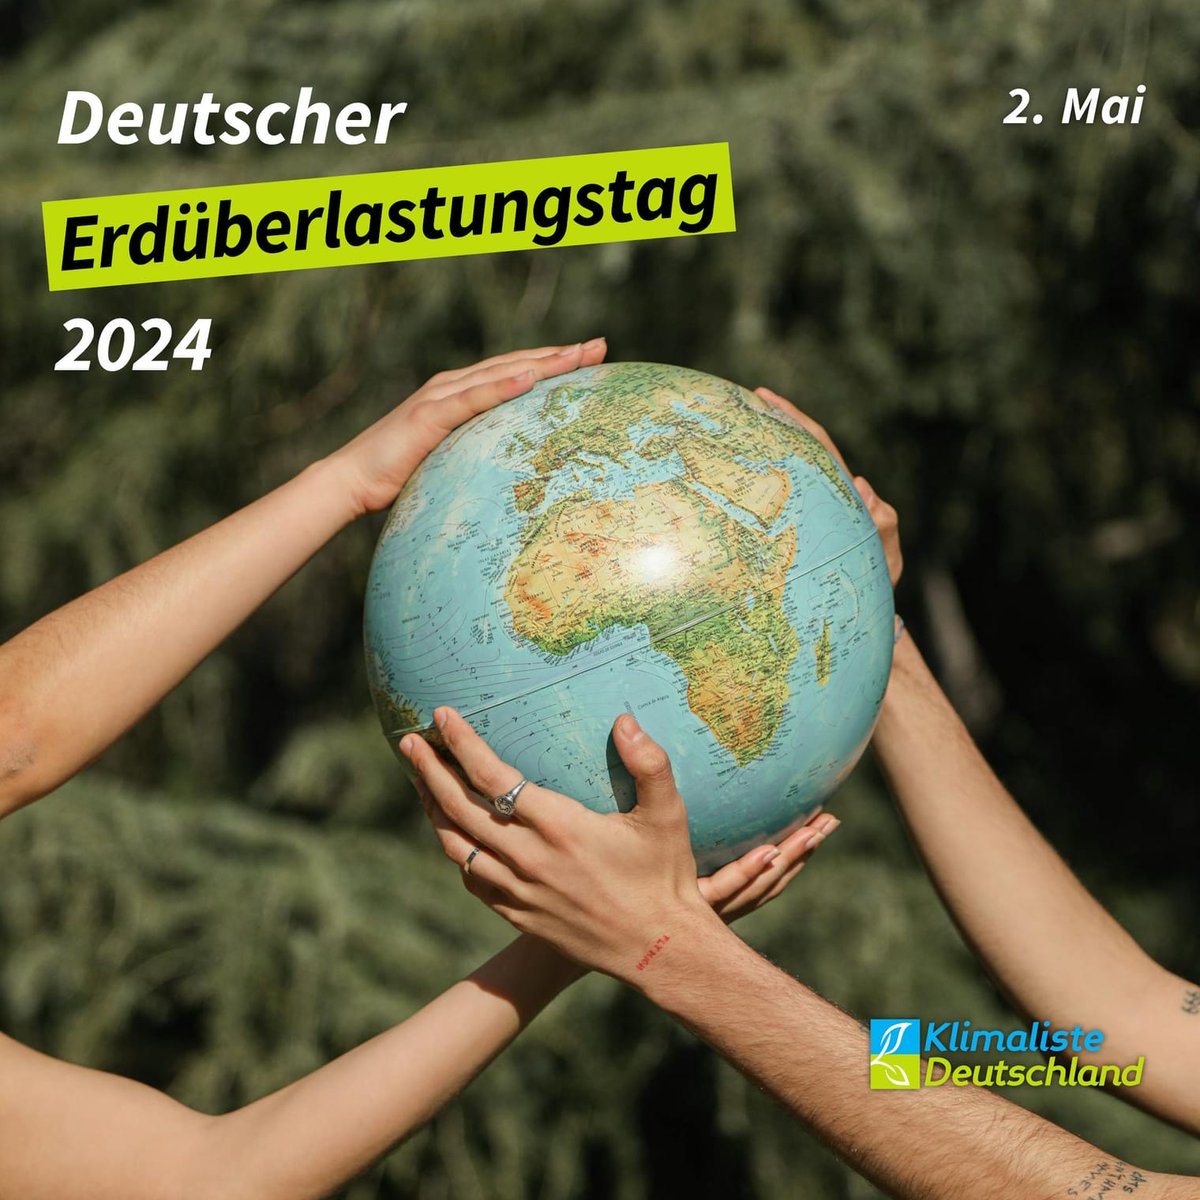 Heute, am 2. Mai ist deutscher #Erdüberlastungstag 2024. Das bedeutet, dass wir in Deutschland mehr Ressourcen nutzen, als unsere #Ökosysteme regenerieren können. Wenn alle Menschen weltweit denselben Lebensstil hätten wie in Deutschland, wären drei Erden notwendig. #NoPlanetB